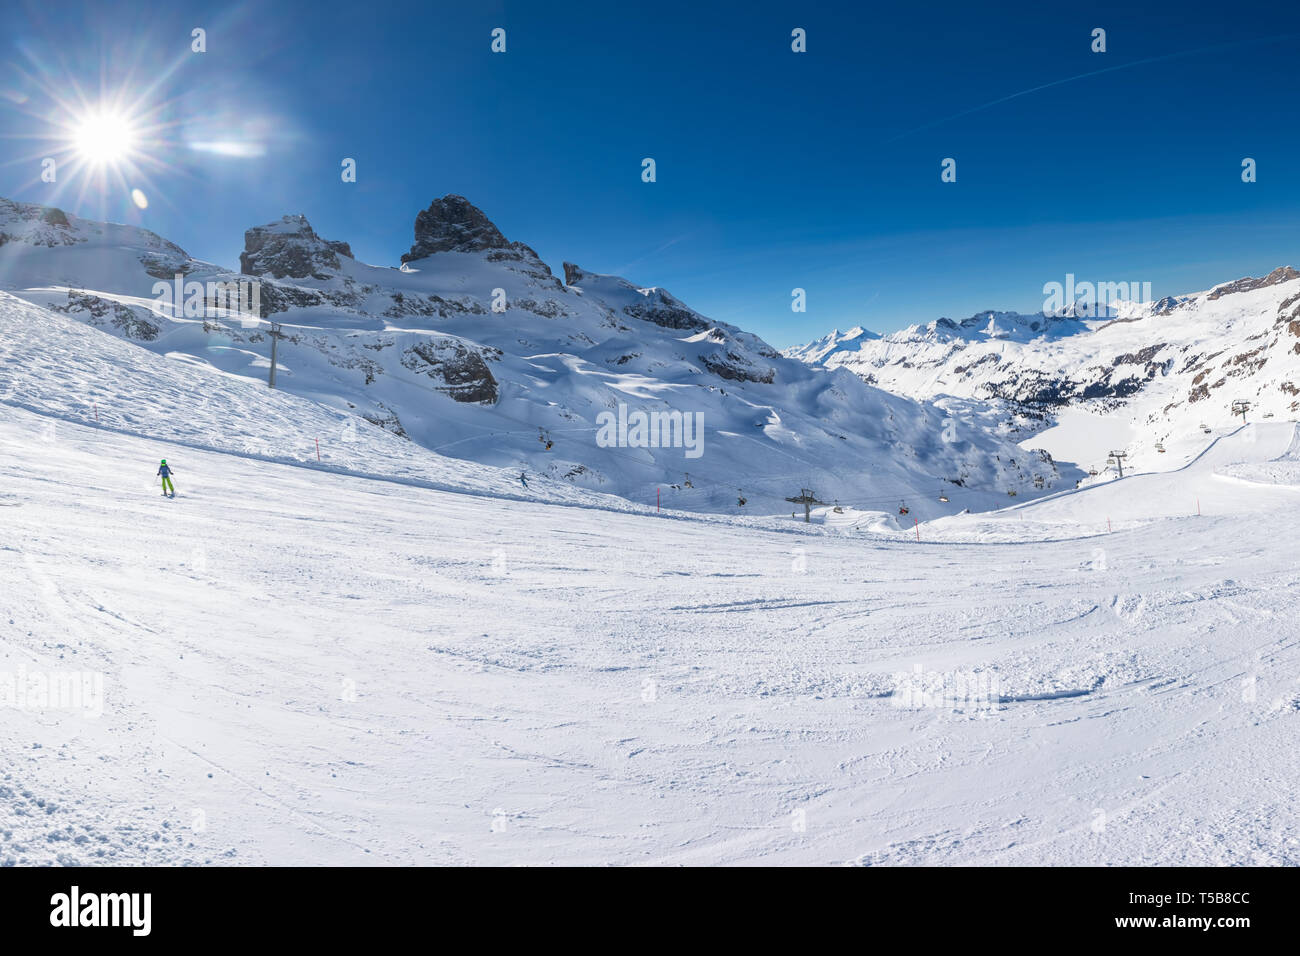 Paisaje invernal con Alpes Suizos. Los esquiadores esquiar en la famosa estación de esquí Engelgerg - Titlis, Suiza, Europa. Foto de stock